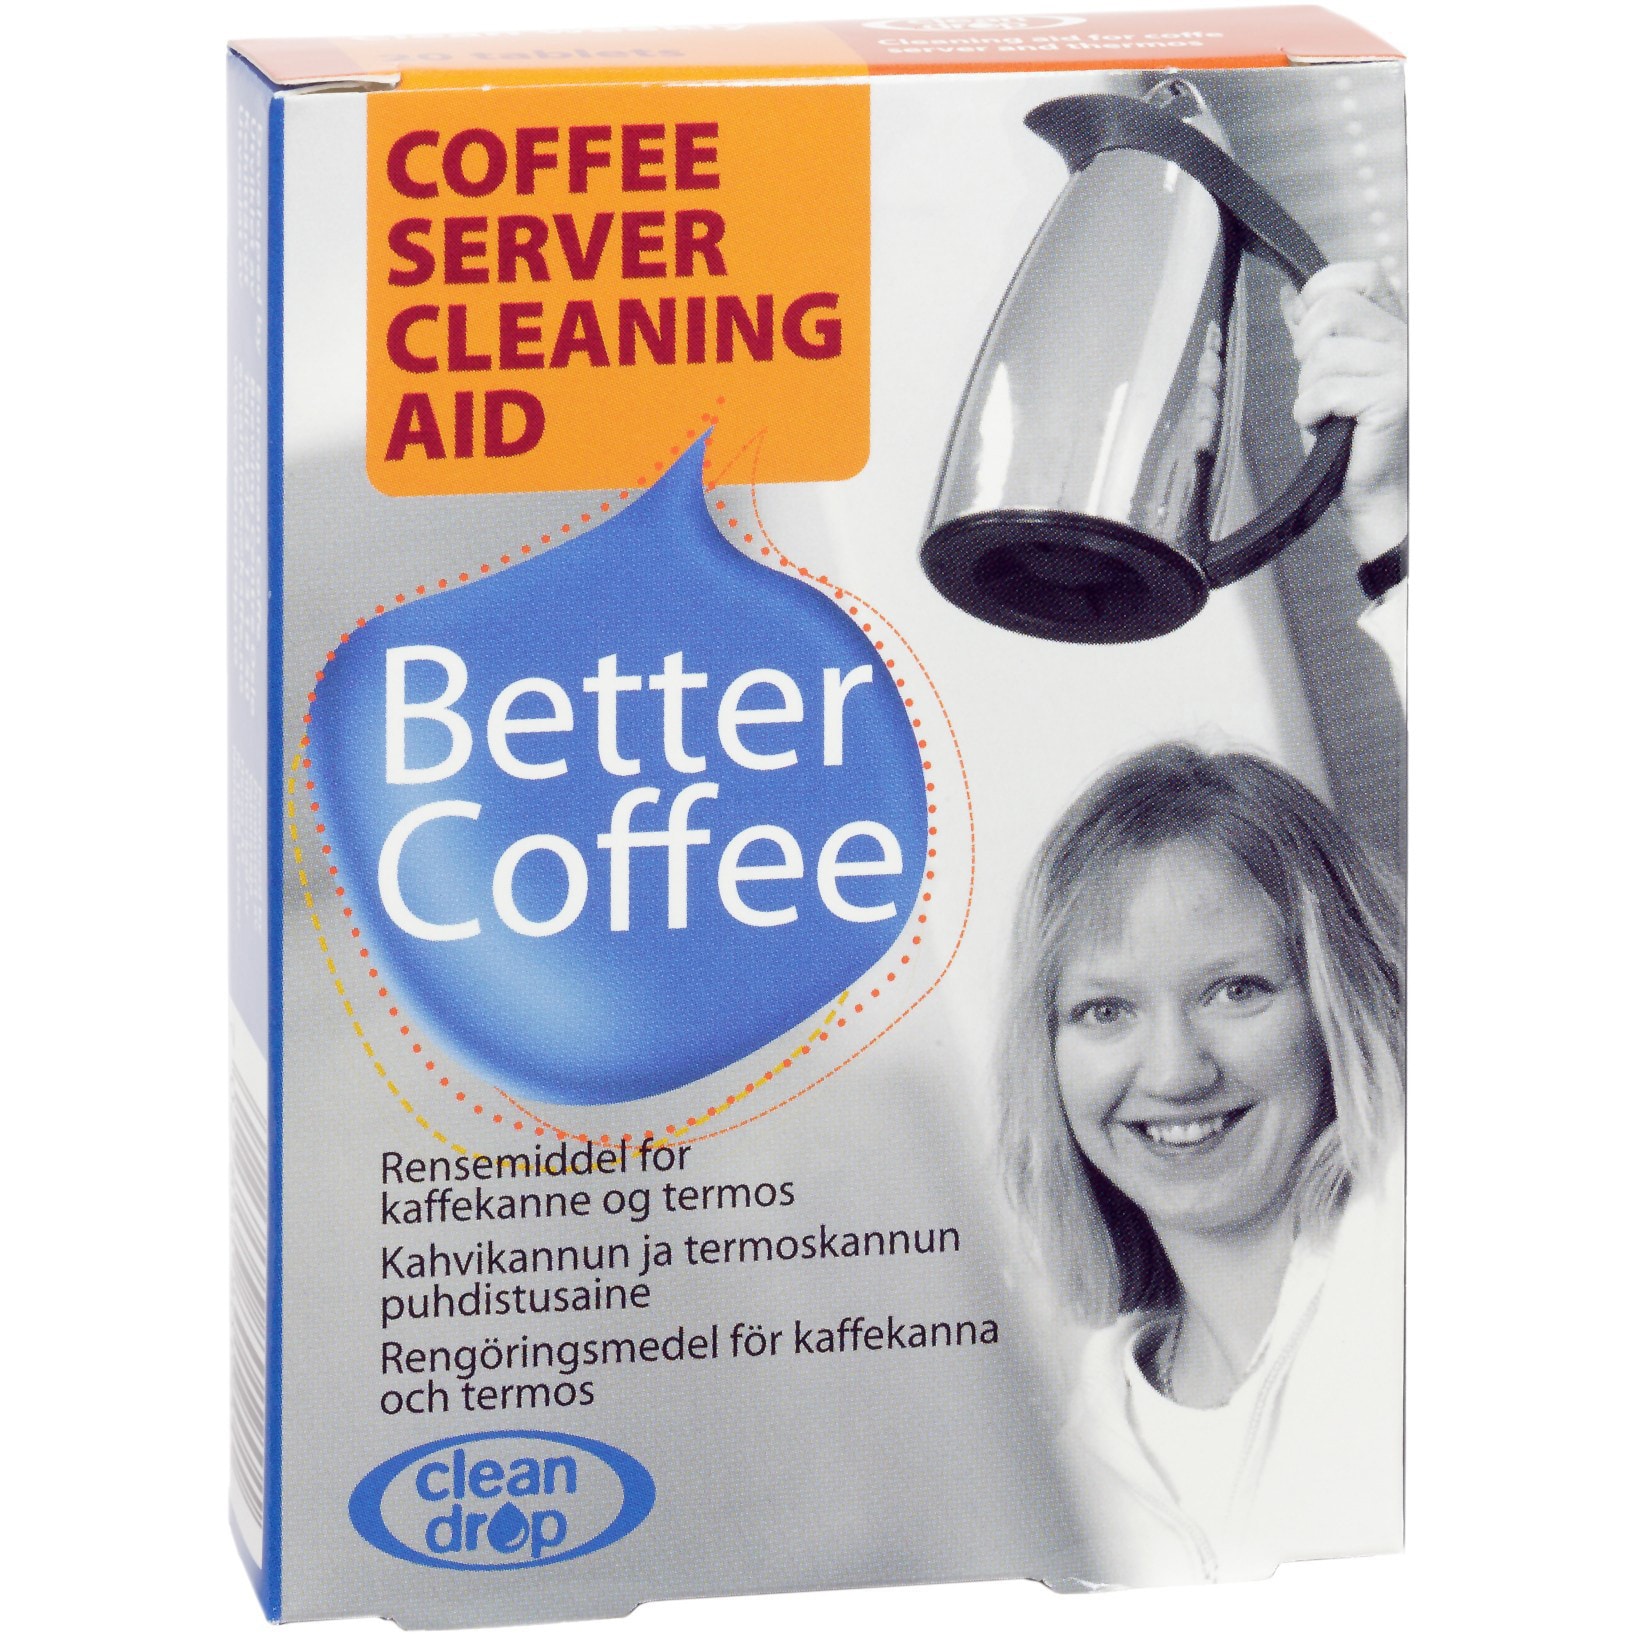 18: Clean Drop renser til kaffekande